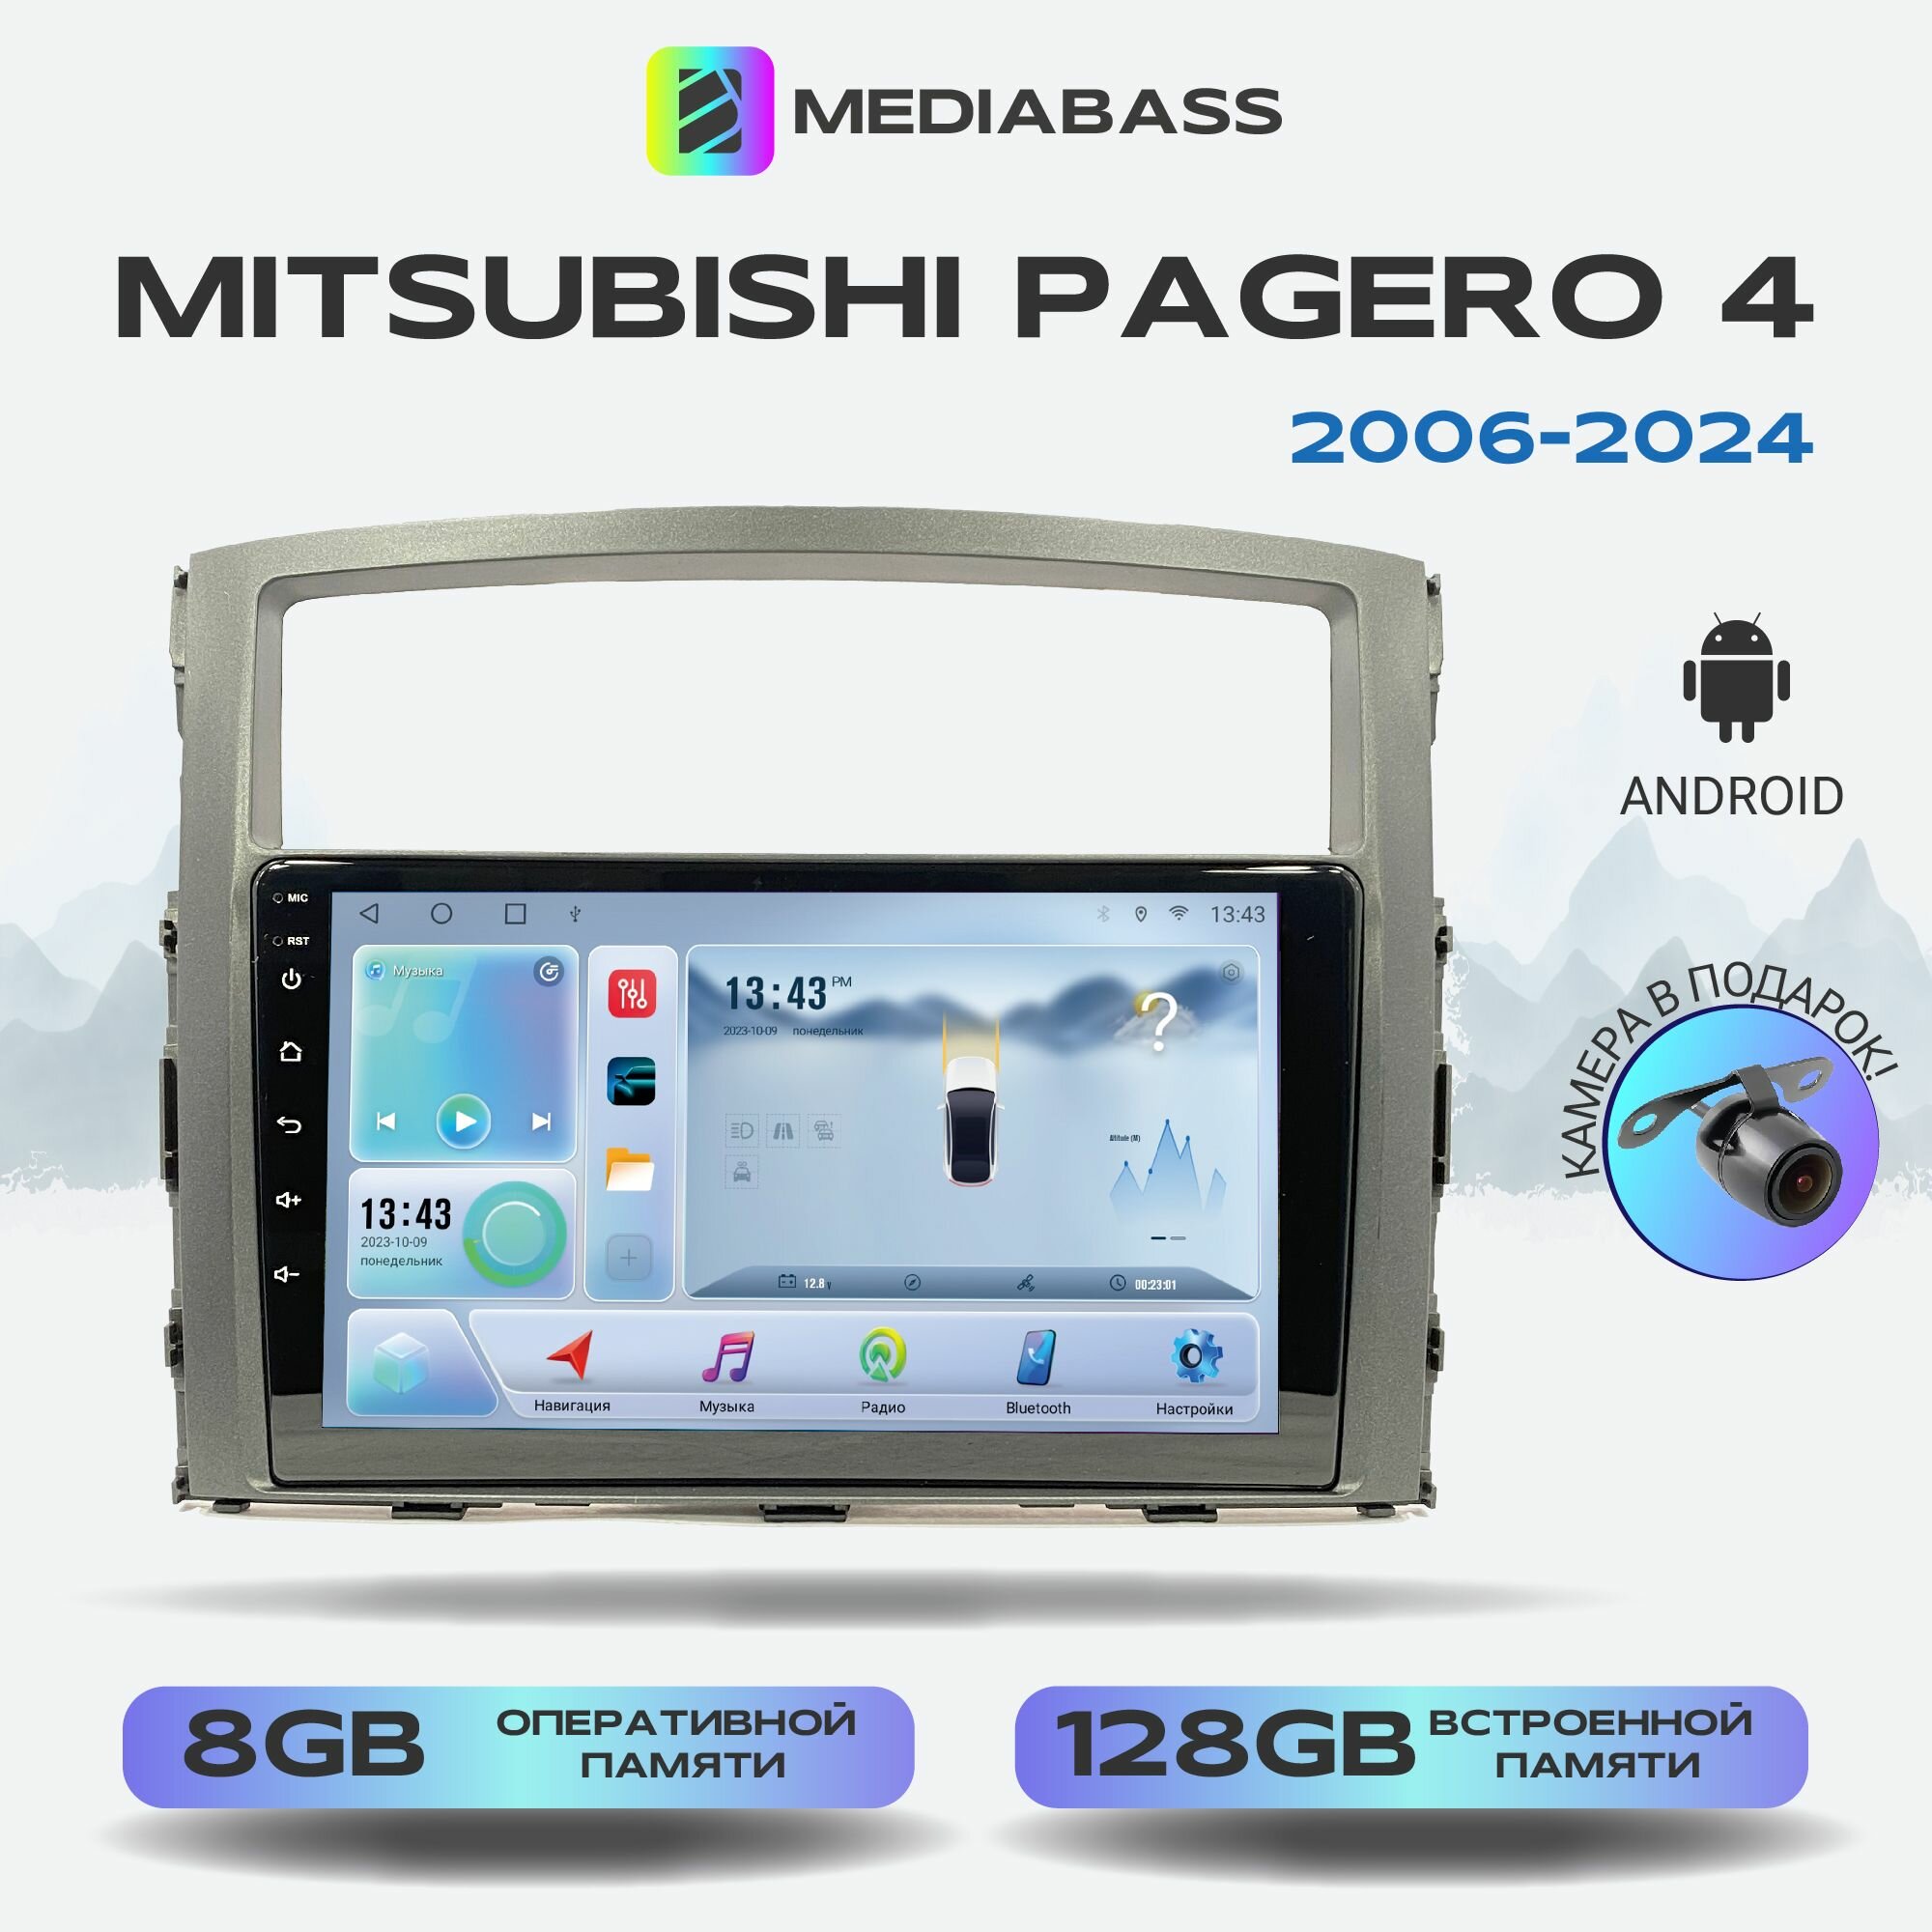 Автомагнитола Mediabass Mitsubishi Pajero 4 2006+, Android 12, 8/128ГБ, 8-ядерный процессор, DSP, 4G модем, голосовое управление, чип-усилитель TDA7851, 4G LTE / Митсубиши Паджеро 4